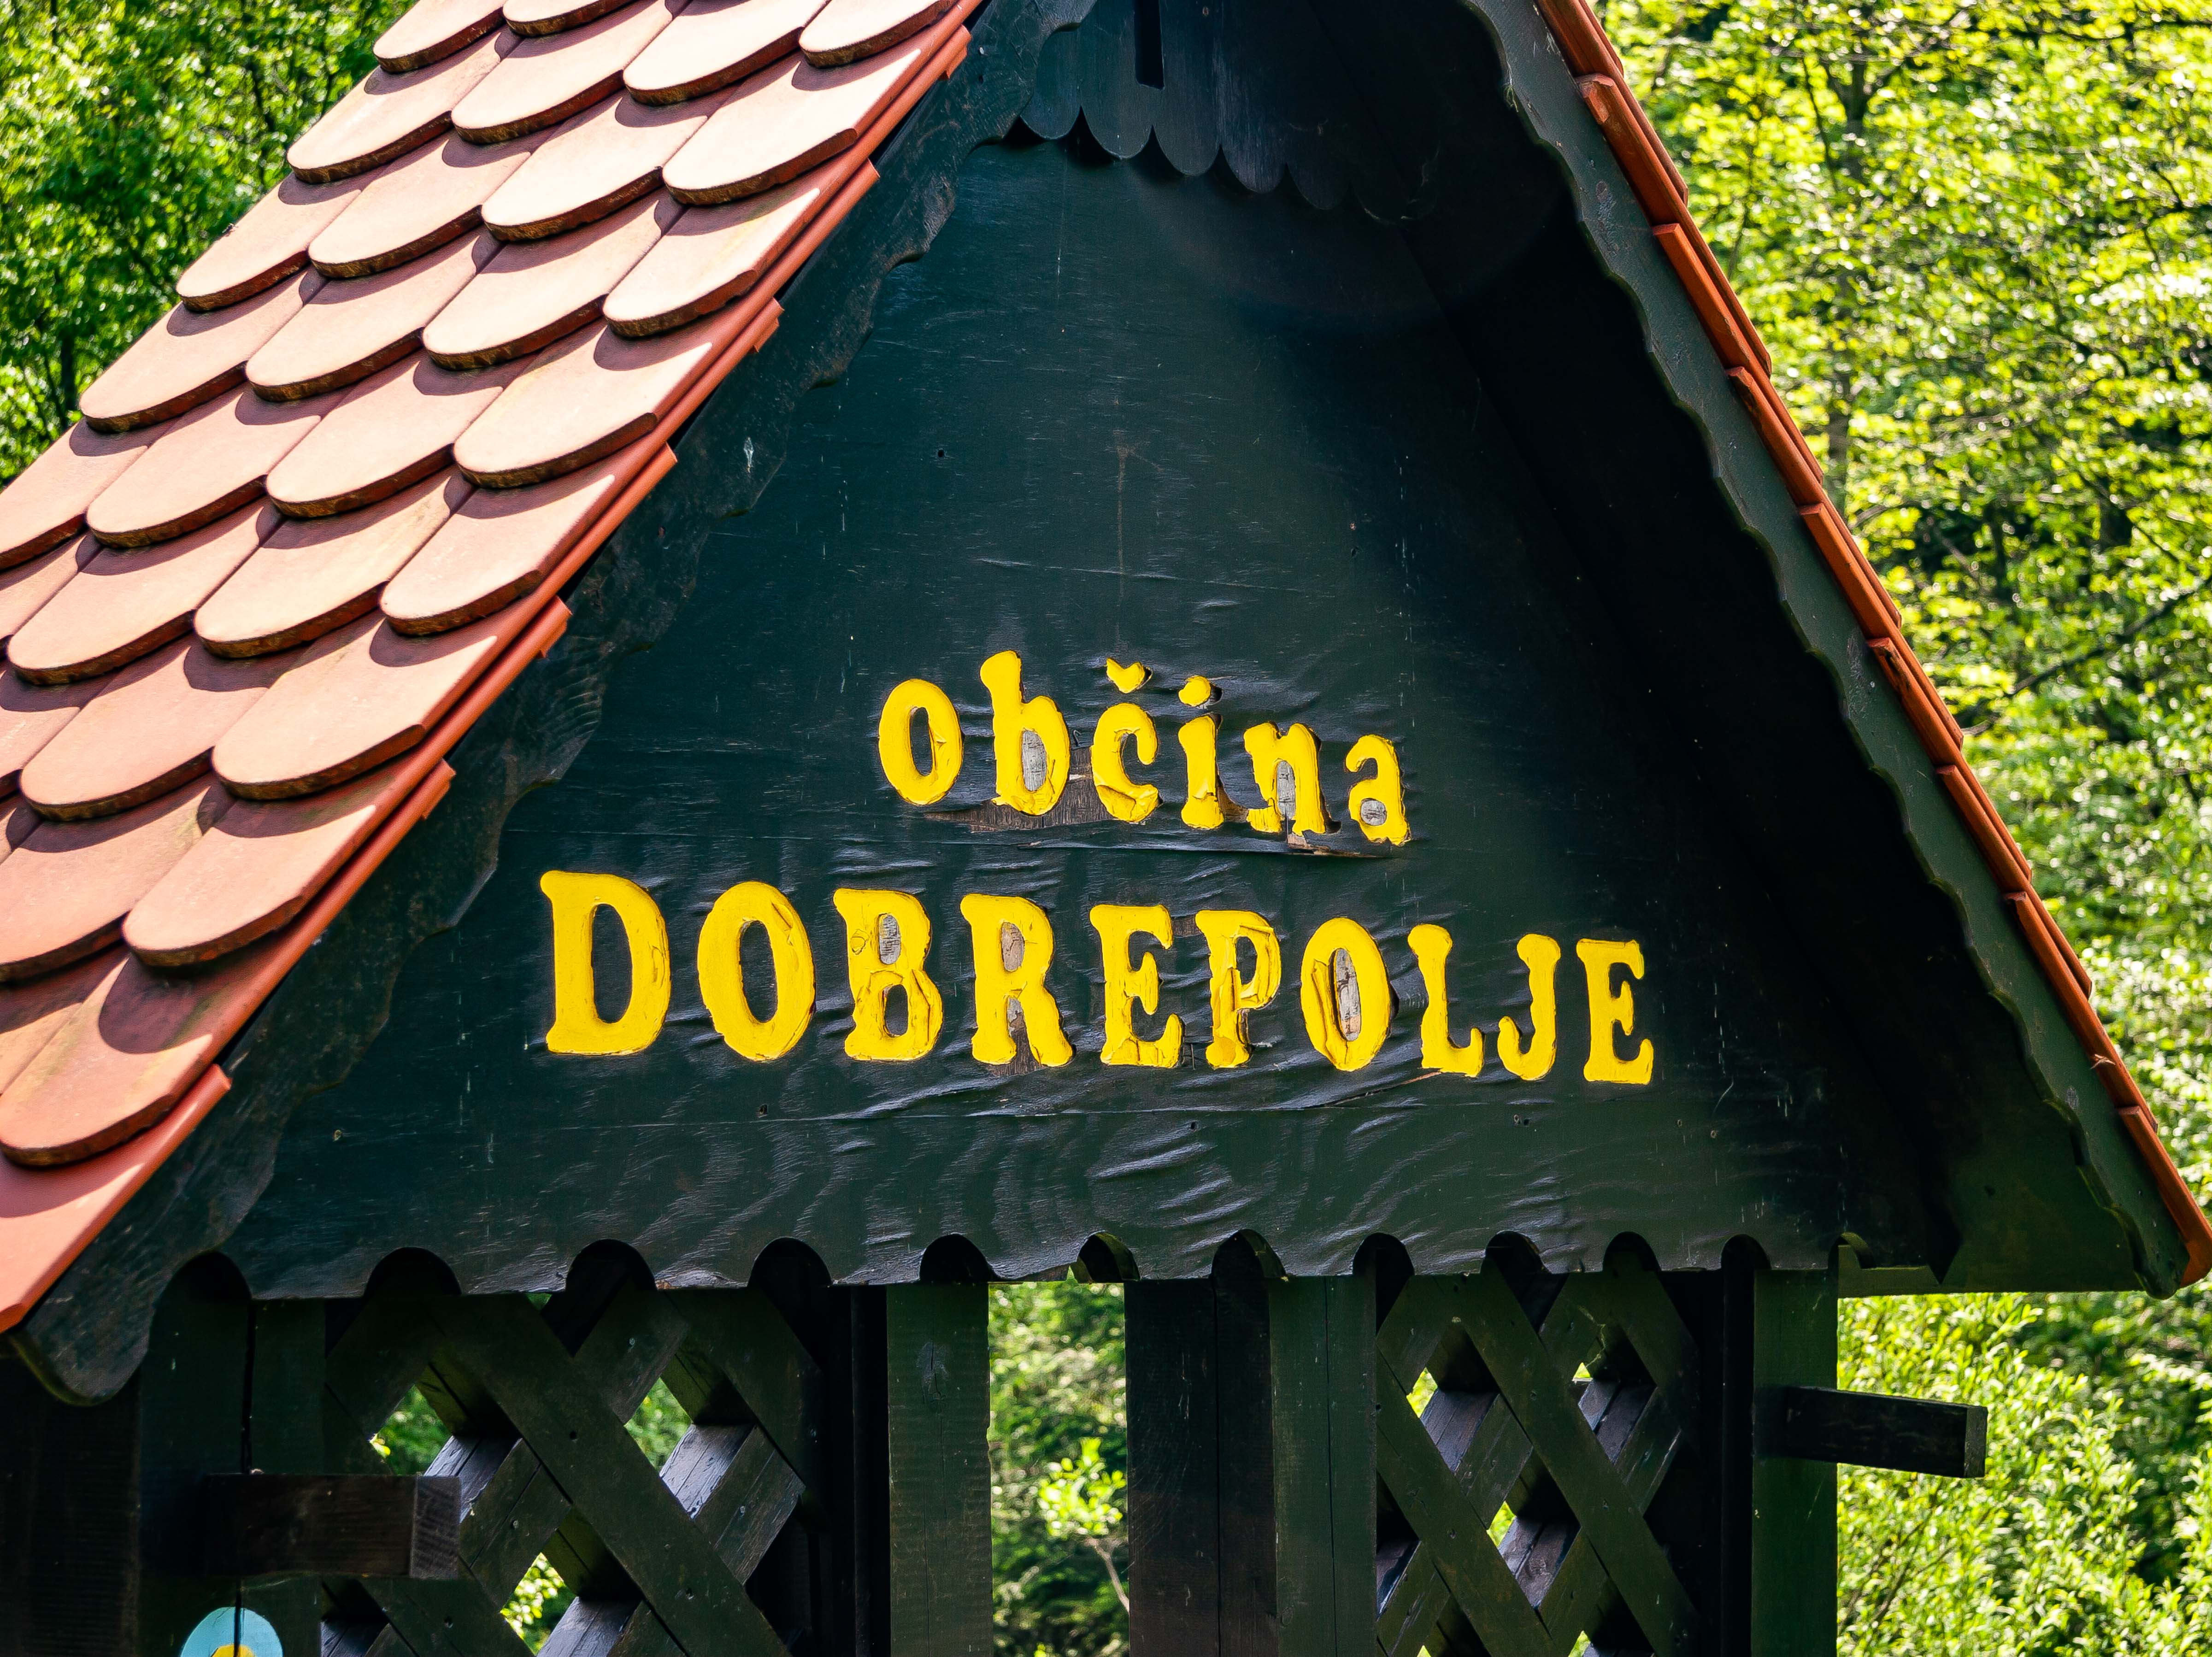 Slovenia, Dobrepolje Prov, Obcina Dobrepolje, 2006, IMG 7219